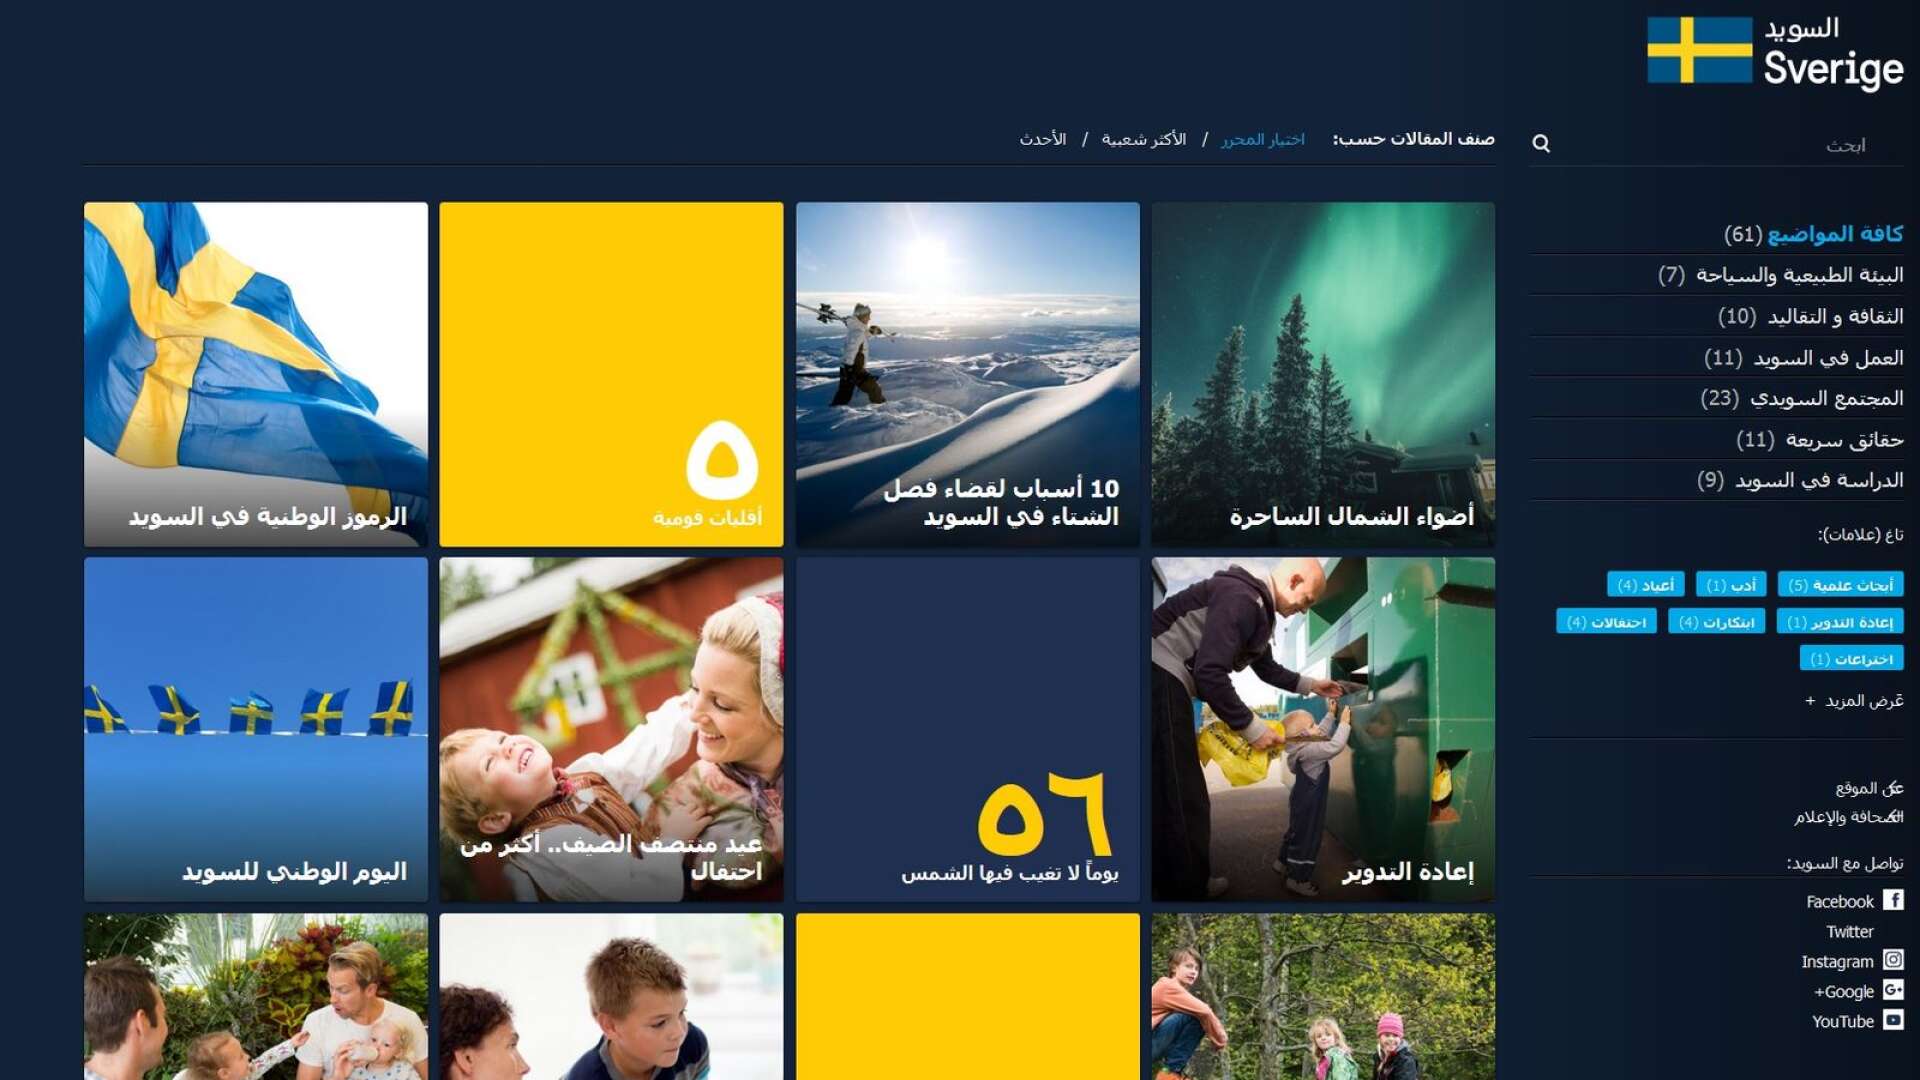 Den arabiskspråkiga versionen av sweden.se.